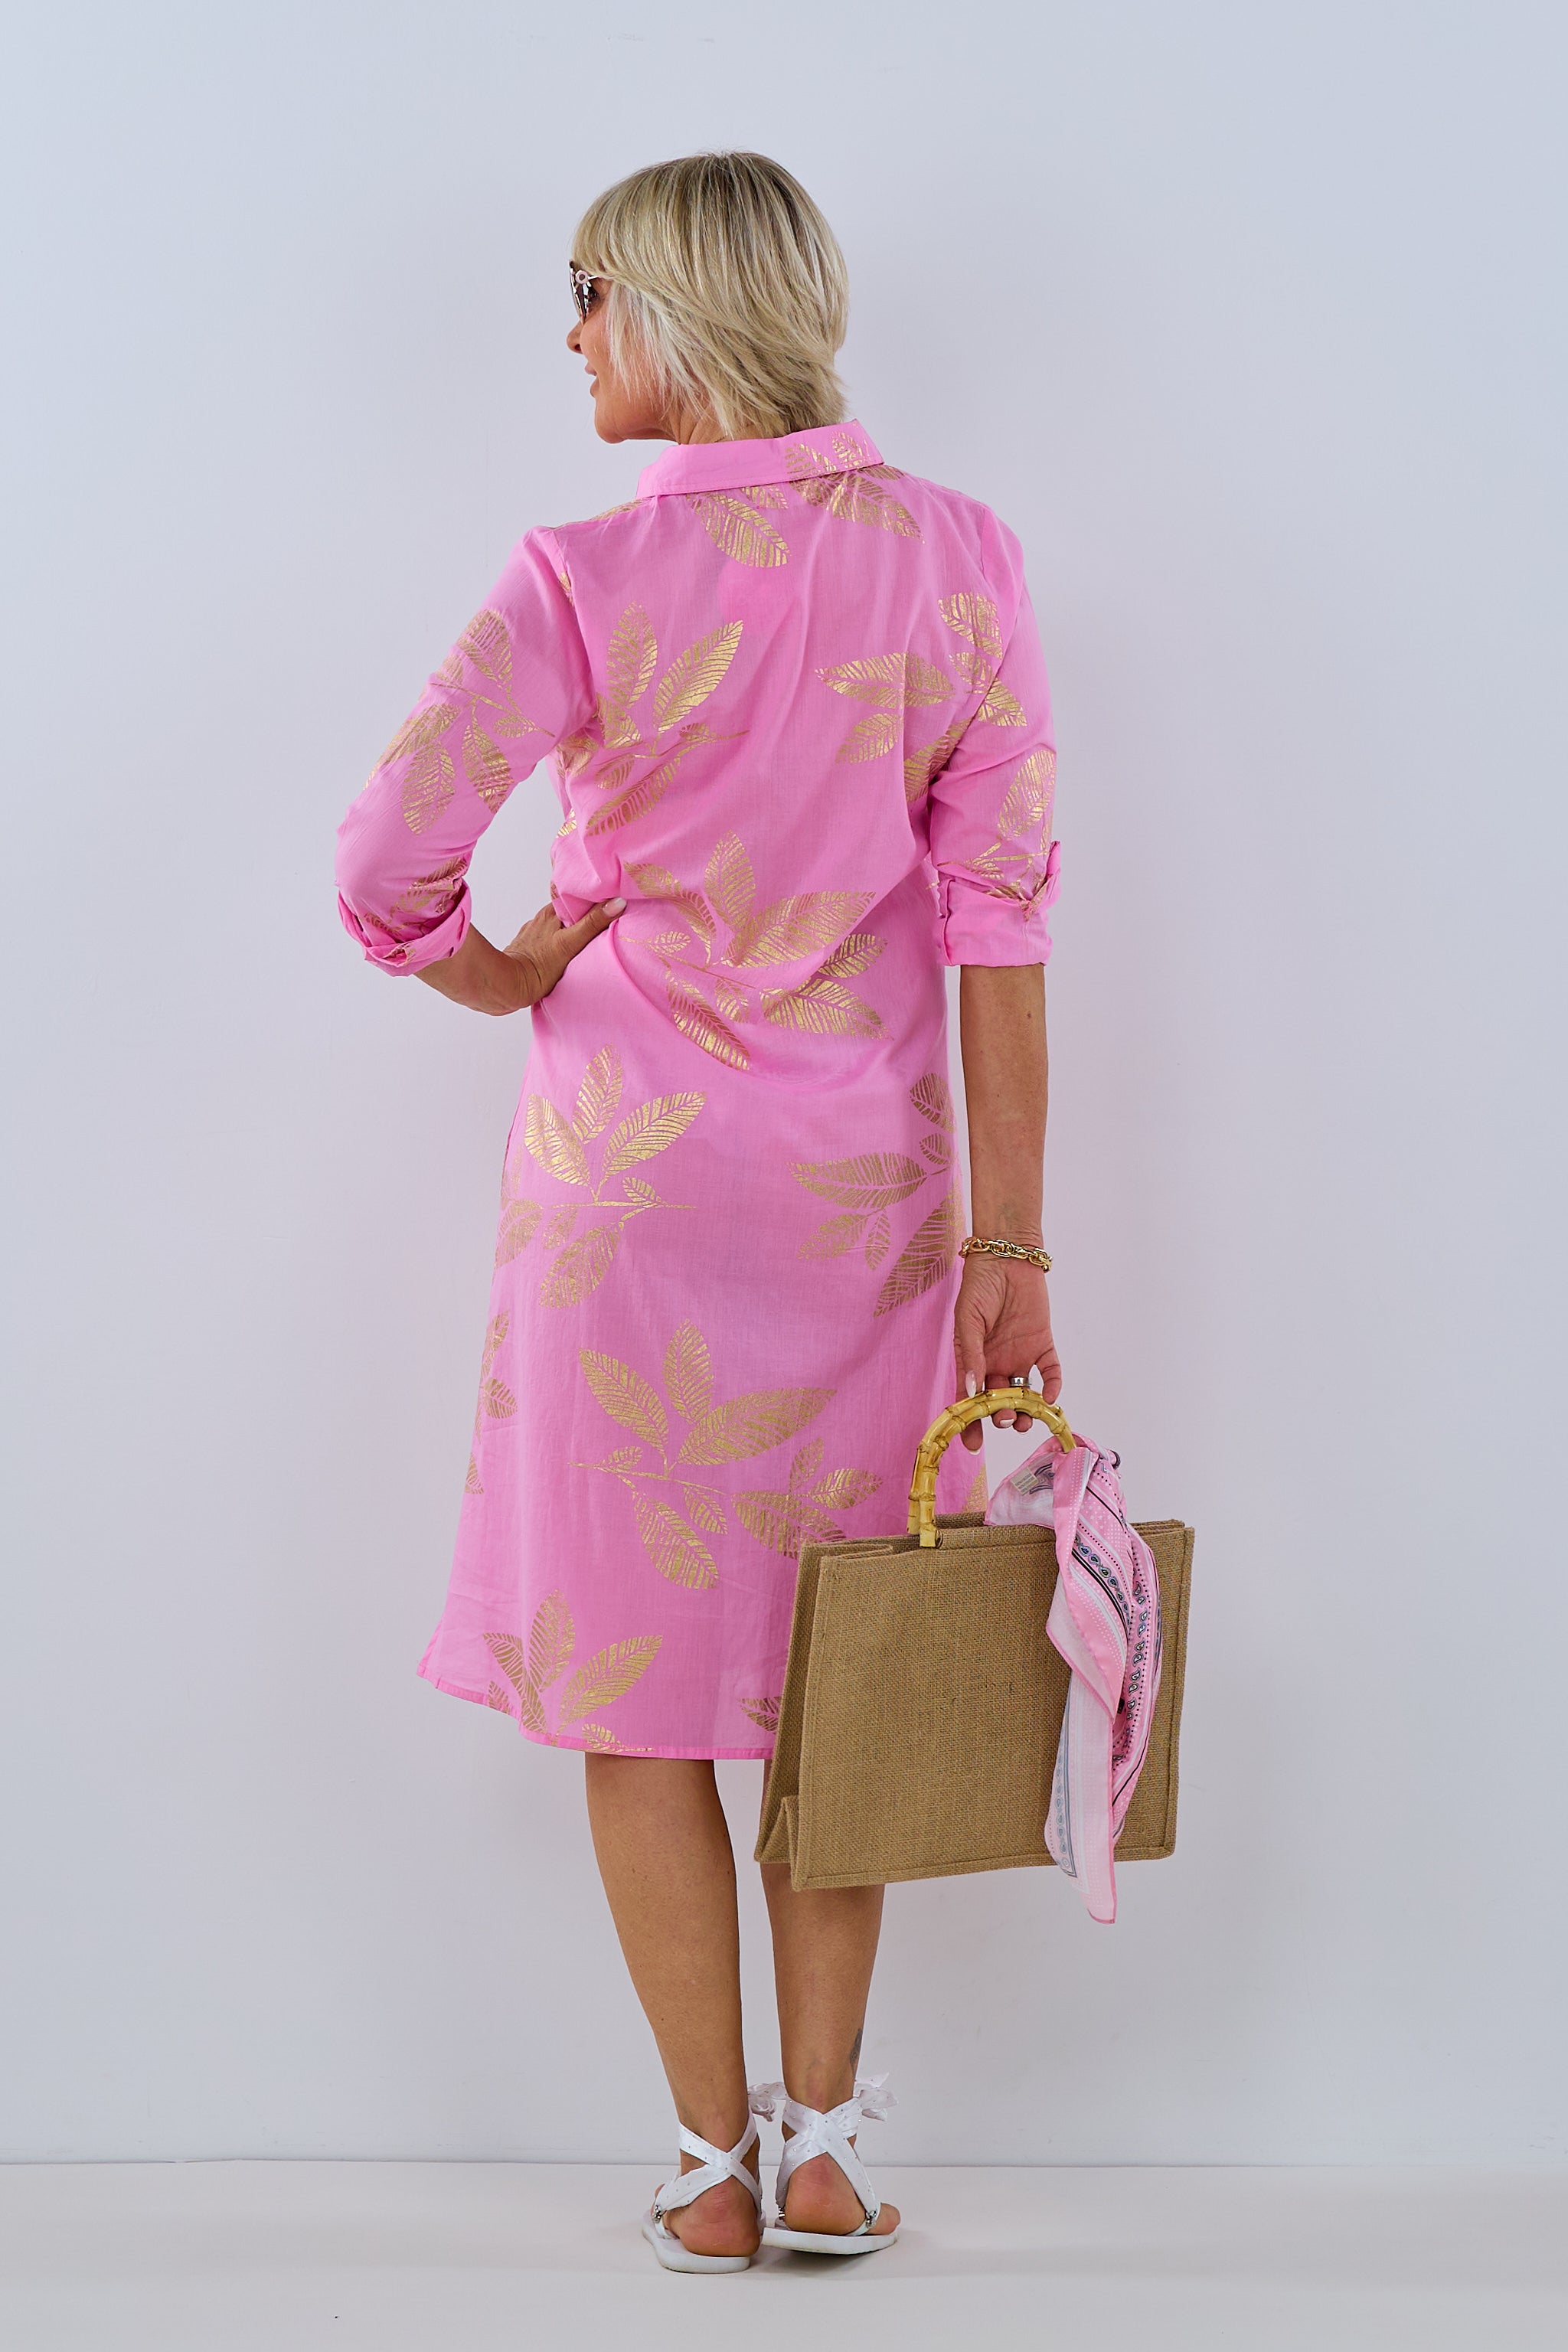 langes Hemdblusenkleid, rosa-gold von Trends & Lifestyle